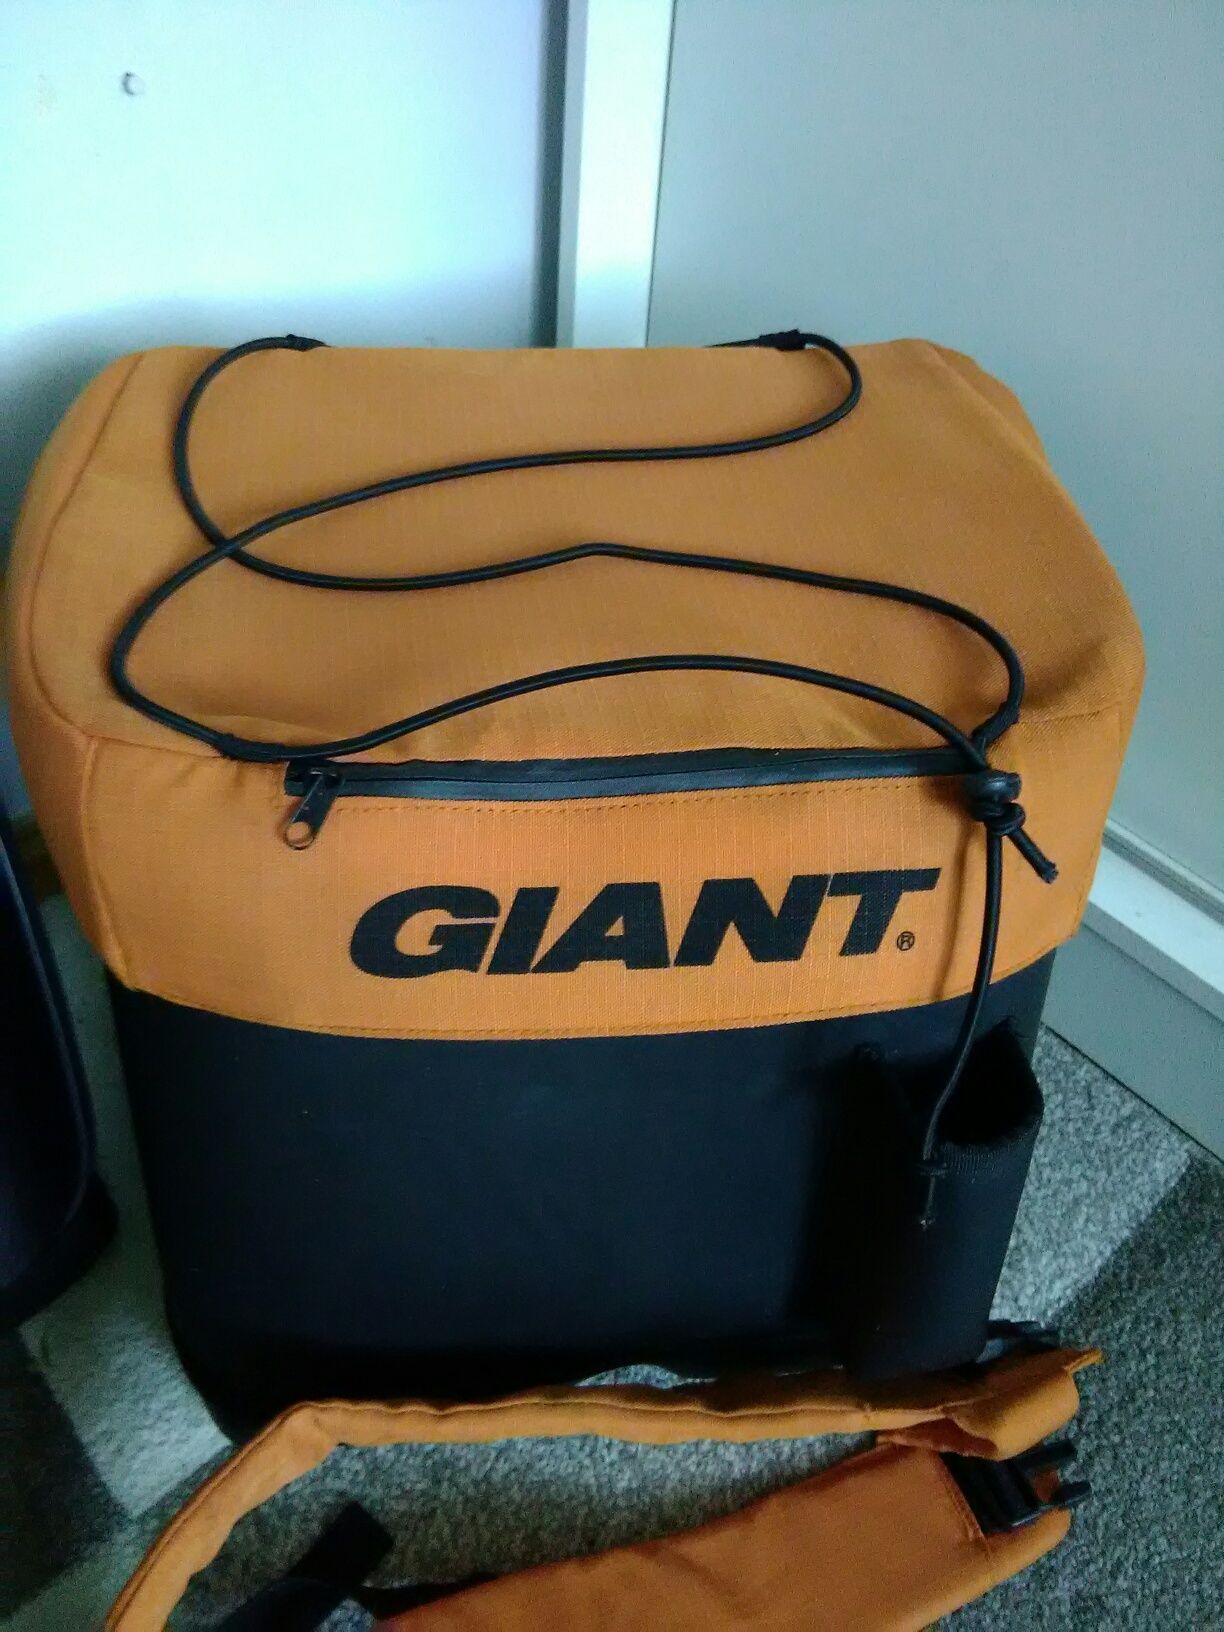 Plecak GIANT do transportu sprzętu wspinaczkowego.